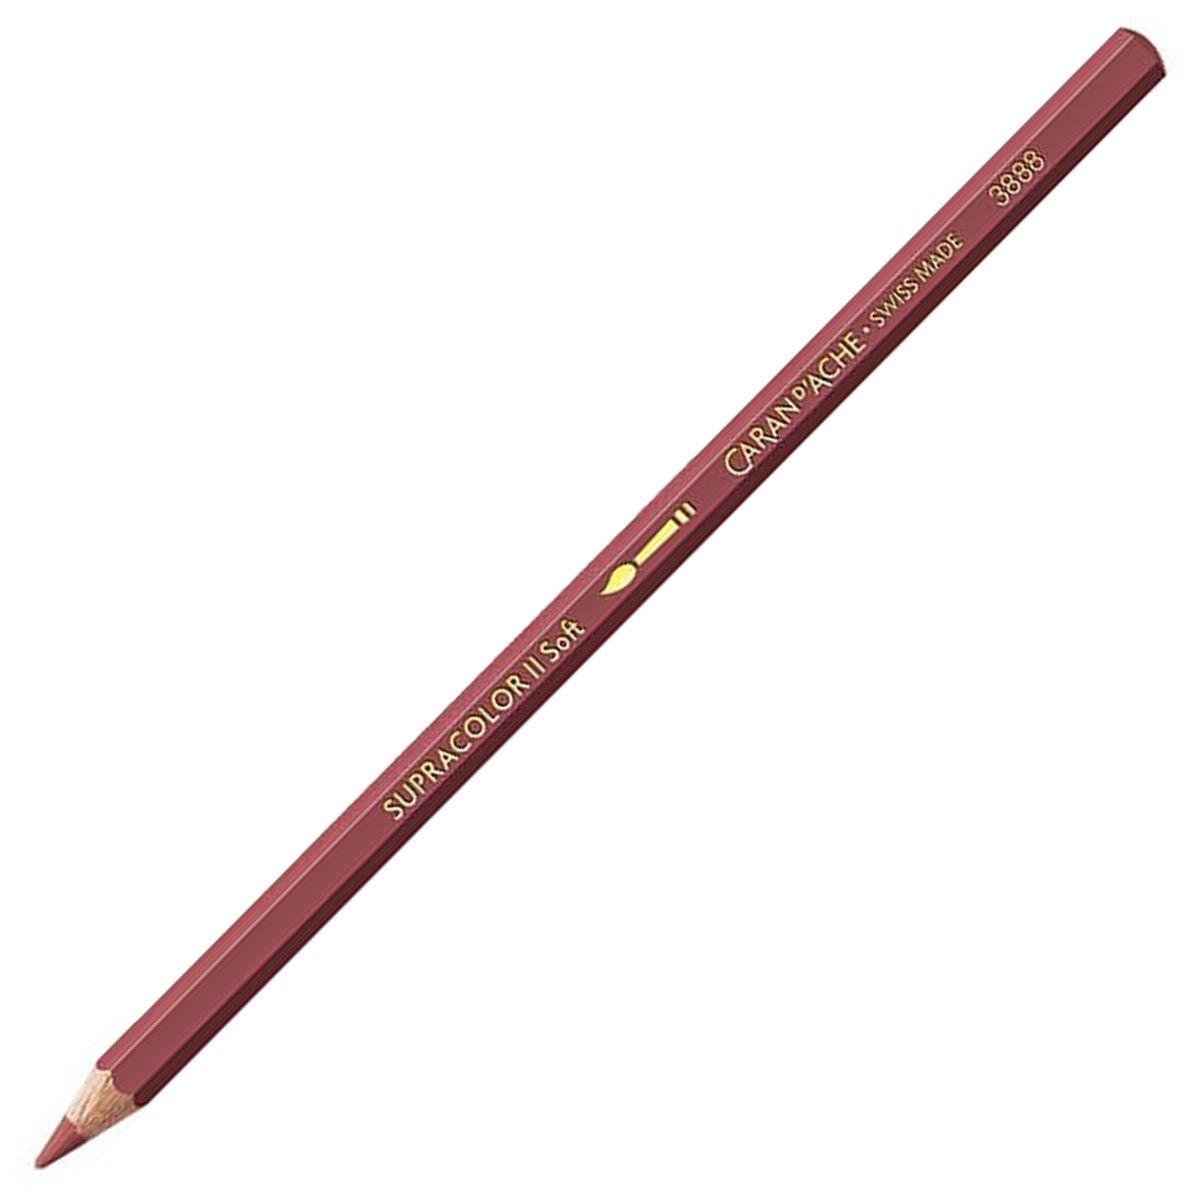 Caran d'Ache Supracolor ll Soft Aquarelle Pencil - Bordeaux Red 085